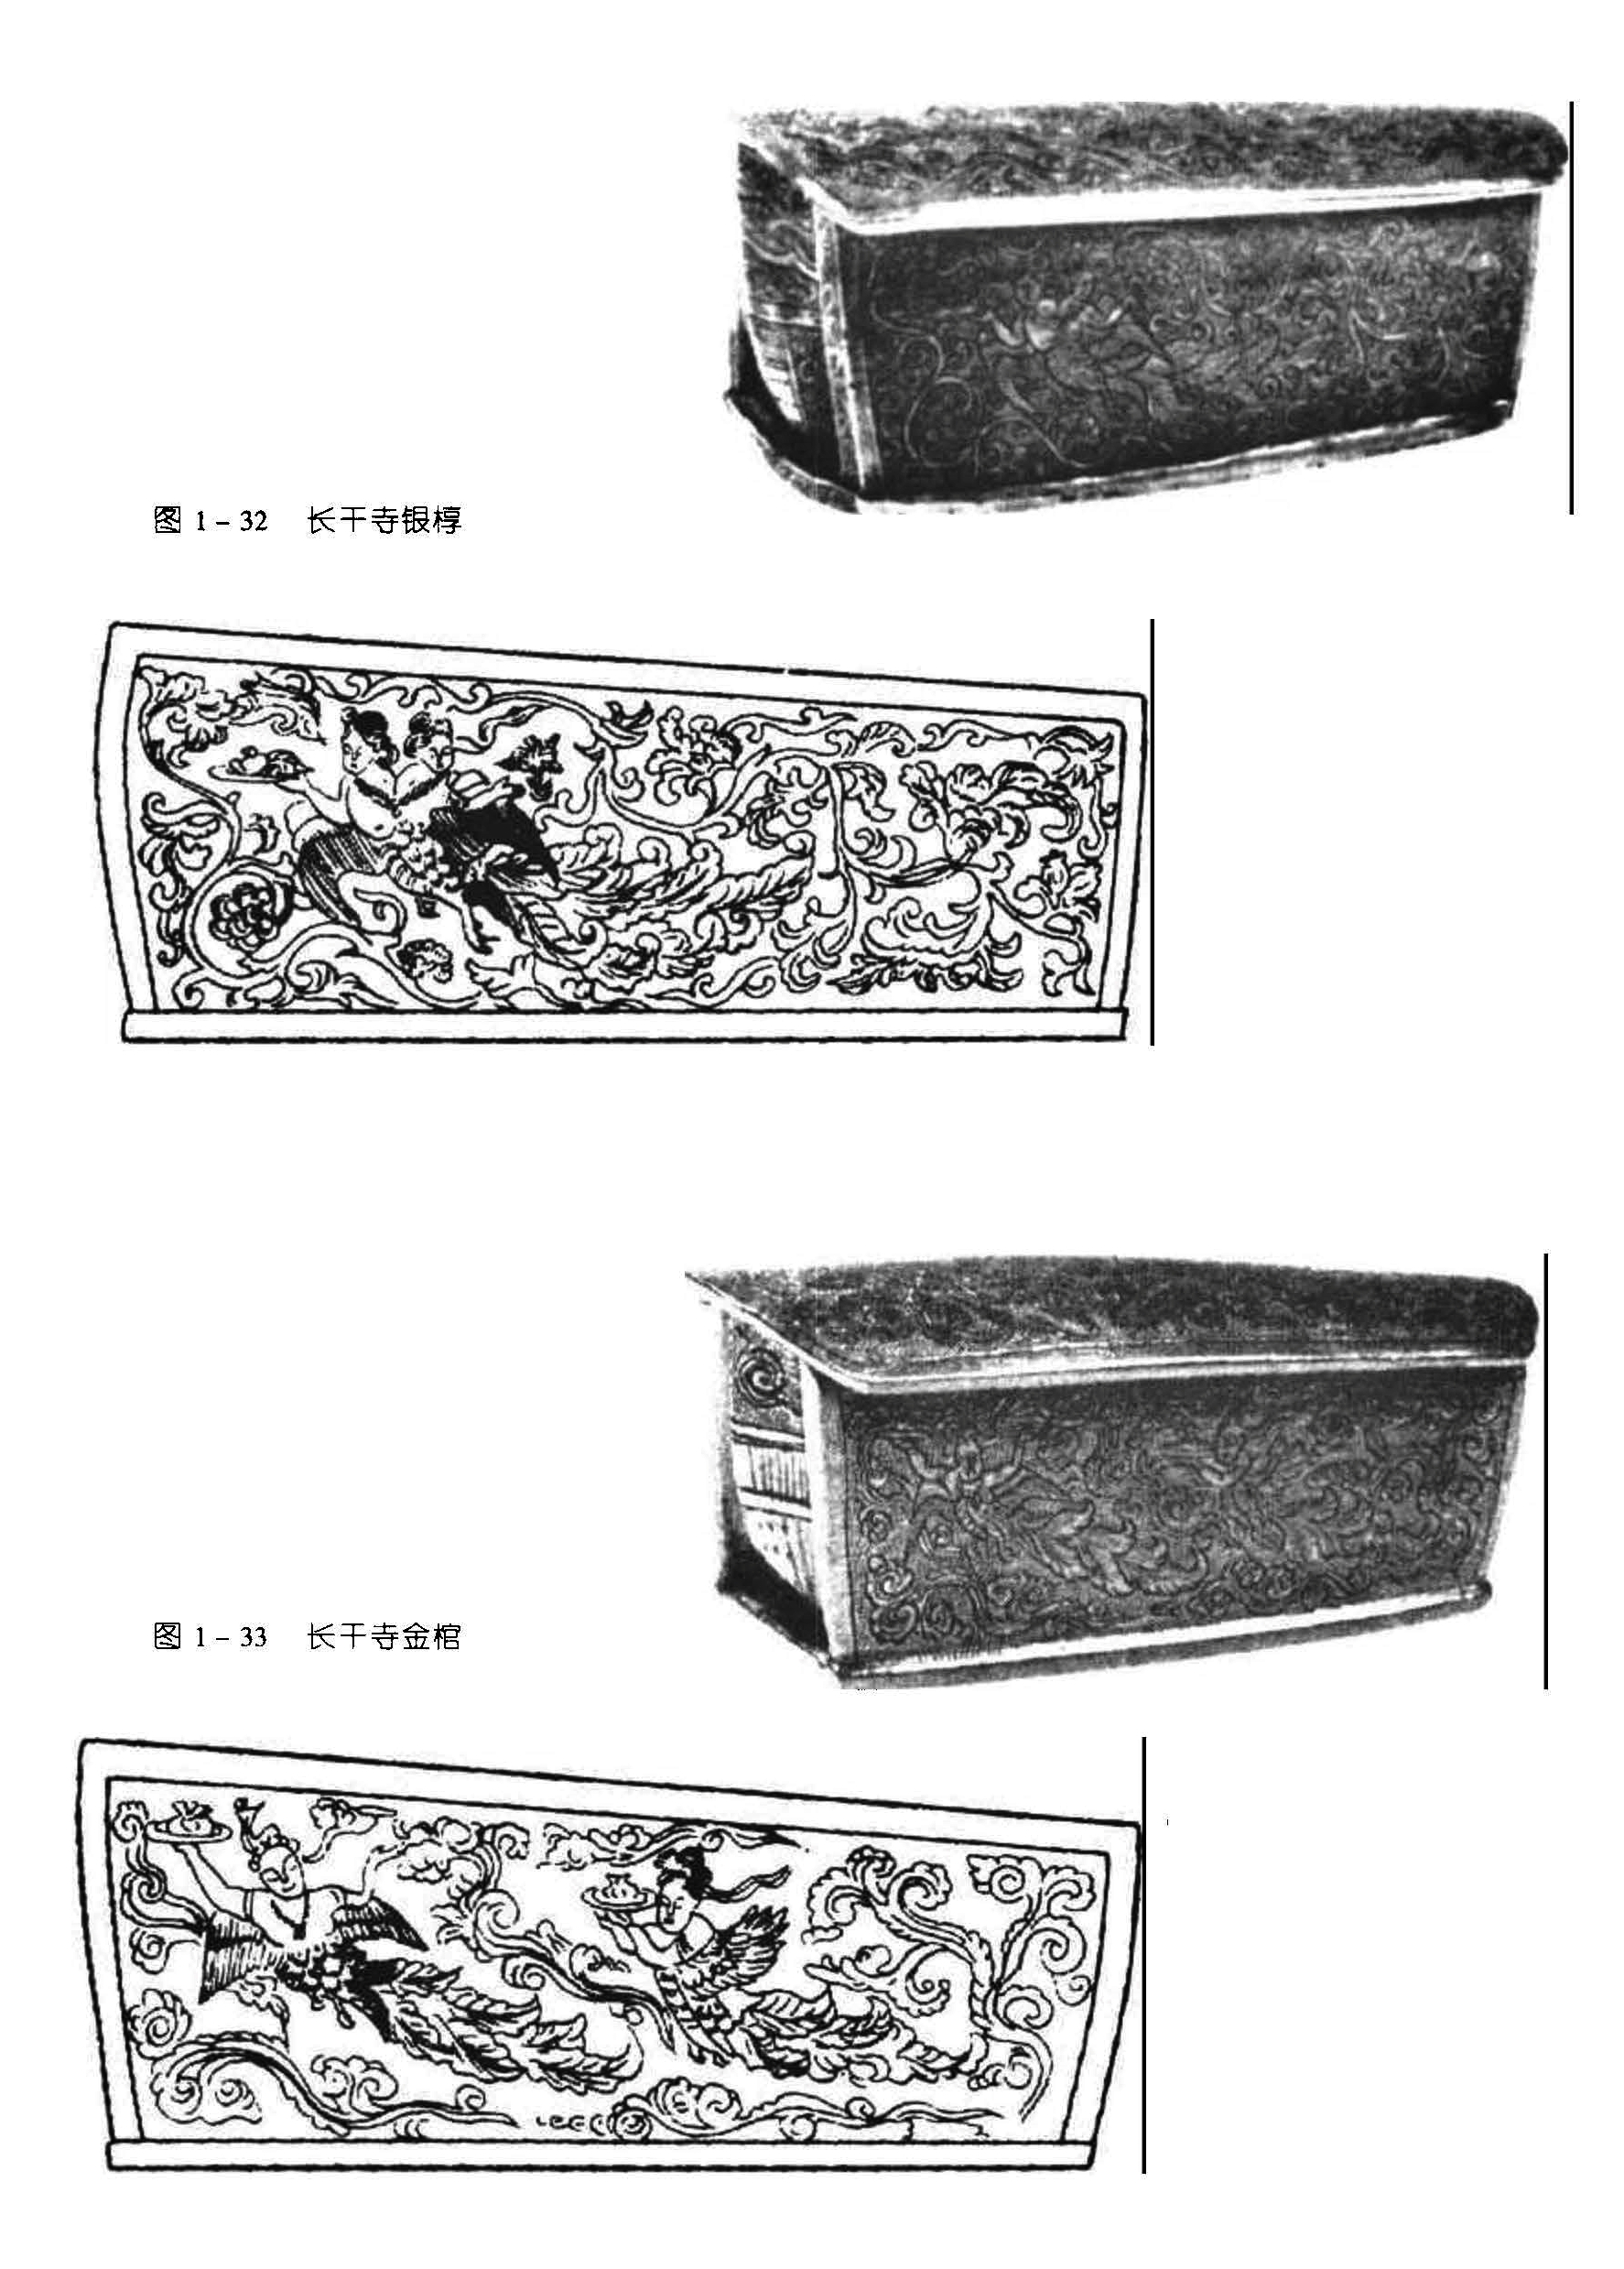 图1-32 长干寺银椁 图 1 - 33 长干寺金棺